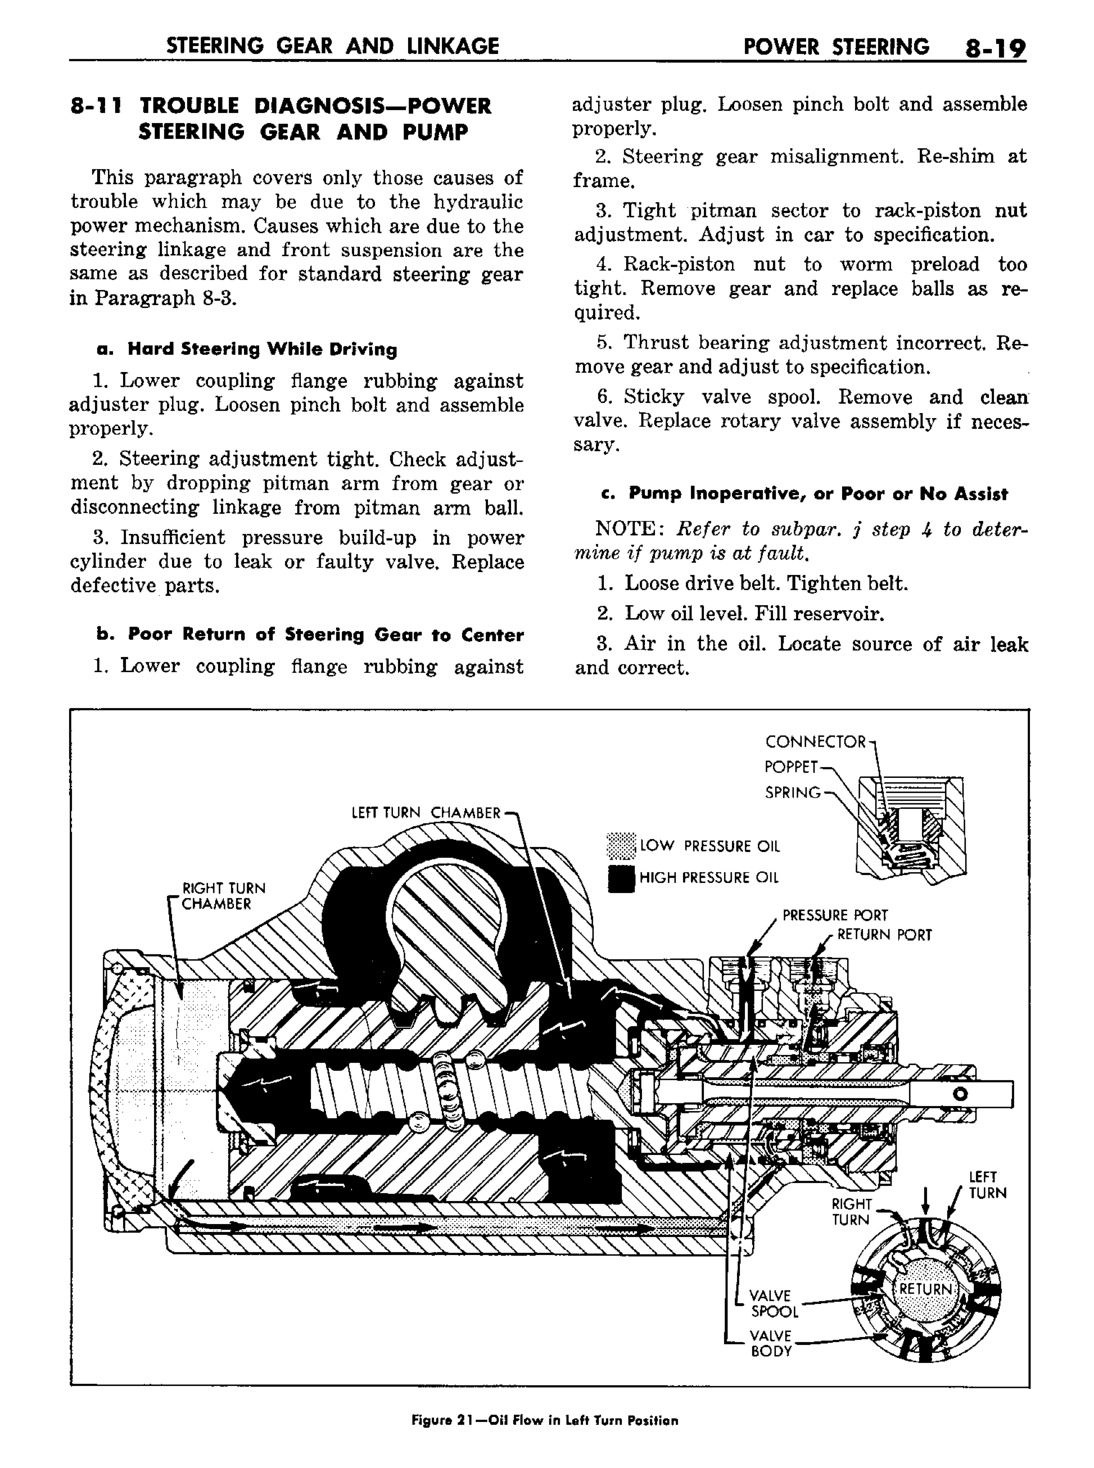 n_09 1960 Buick Shop Manual - Steering-019-019.jpg